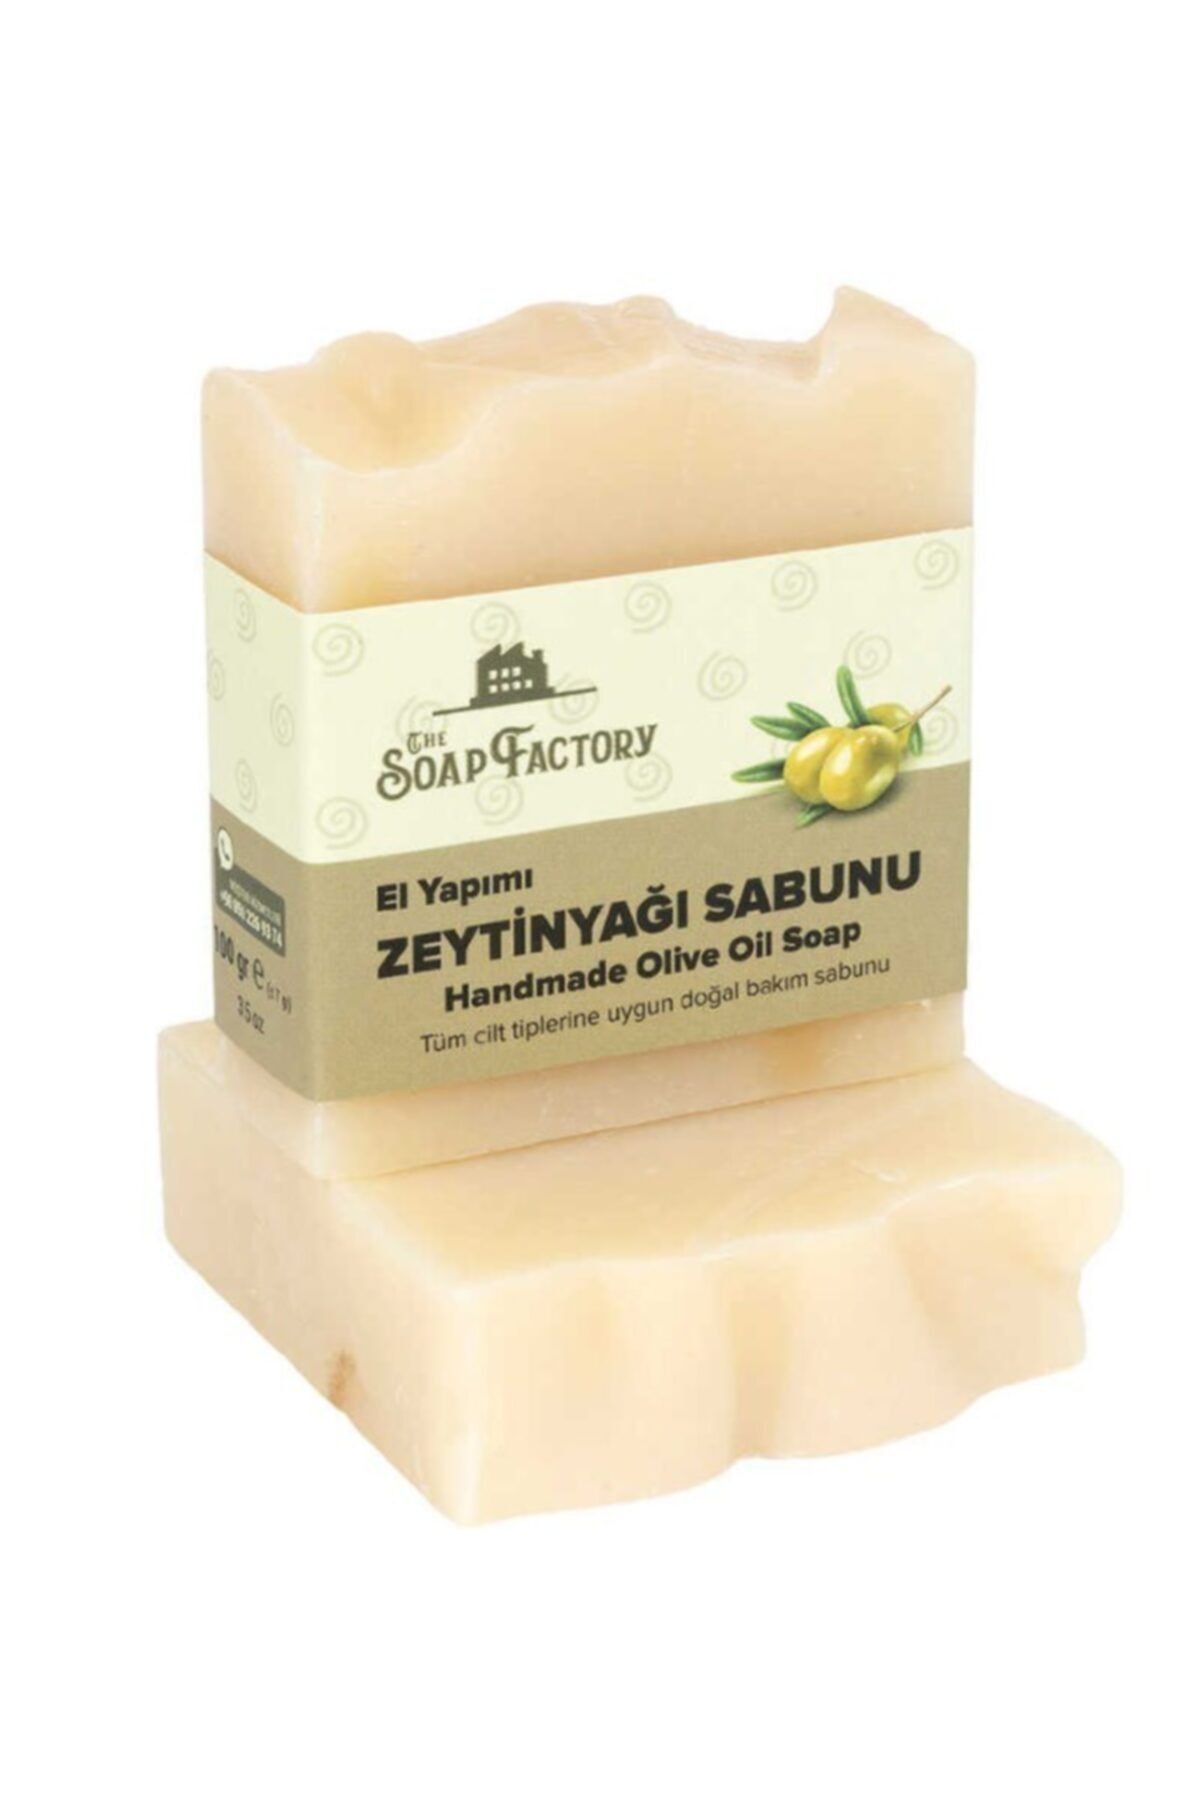 The Soap Factory El Yapımı Bitkisel Zeytinyağı Sabunu 100 gr